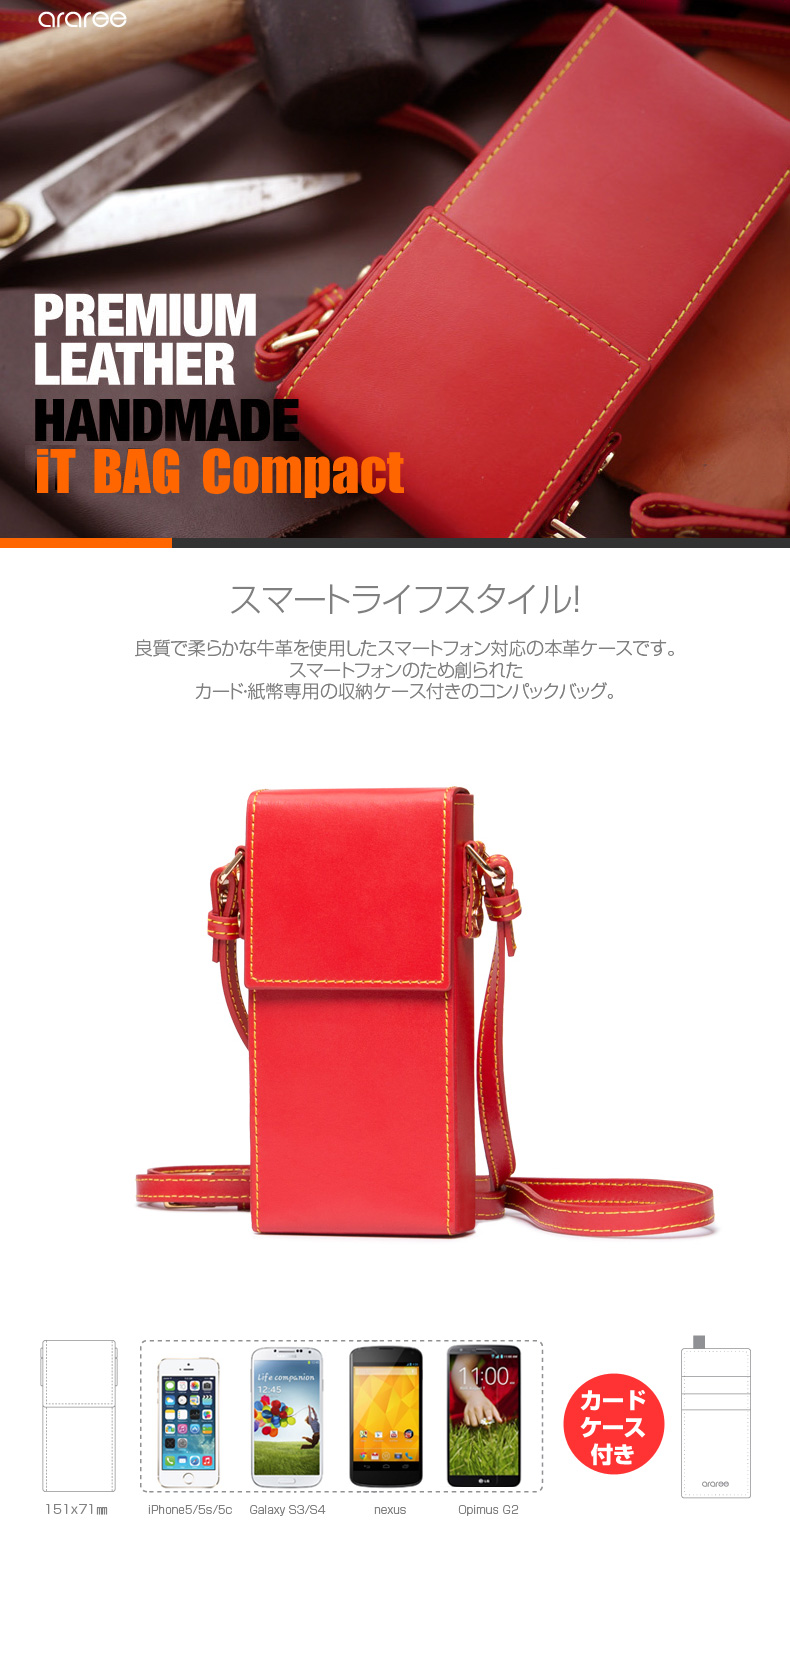 商品特徴 iPhone5/5s ケースiT-BAG Compact(アイティーバッグ コンパクト)※対応機種:iPhone5/5s, Galaxy S3/S4, nexus, Opimus G2 